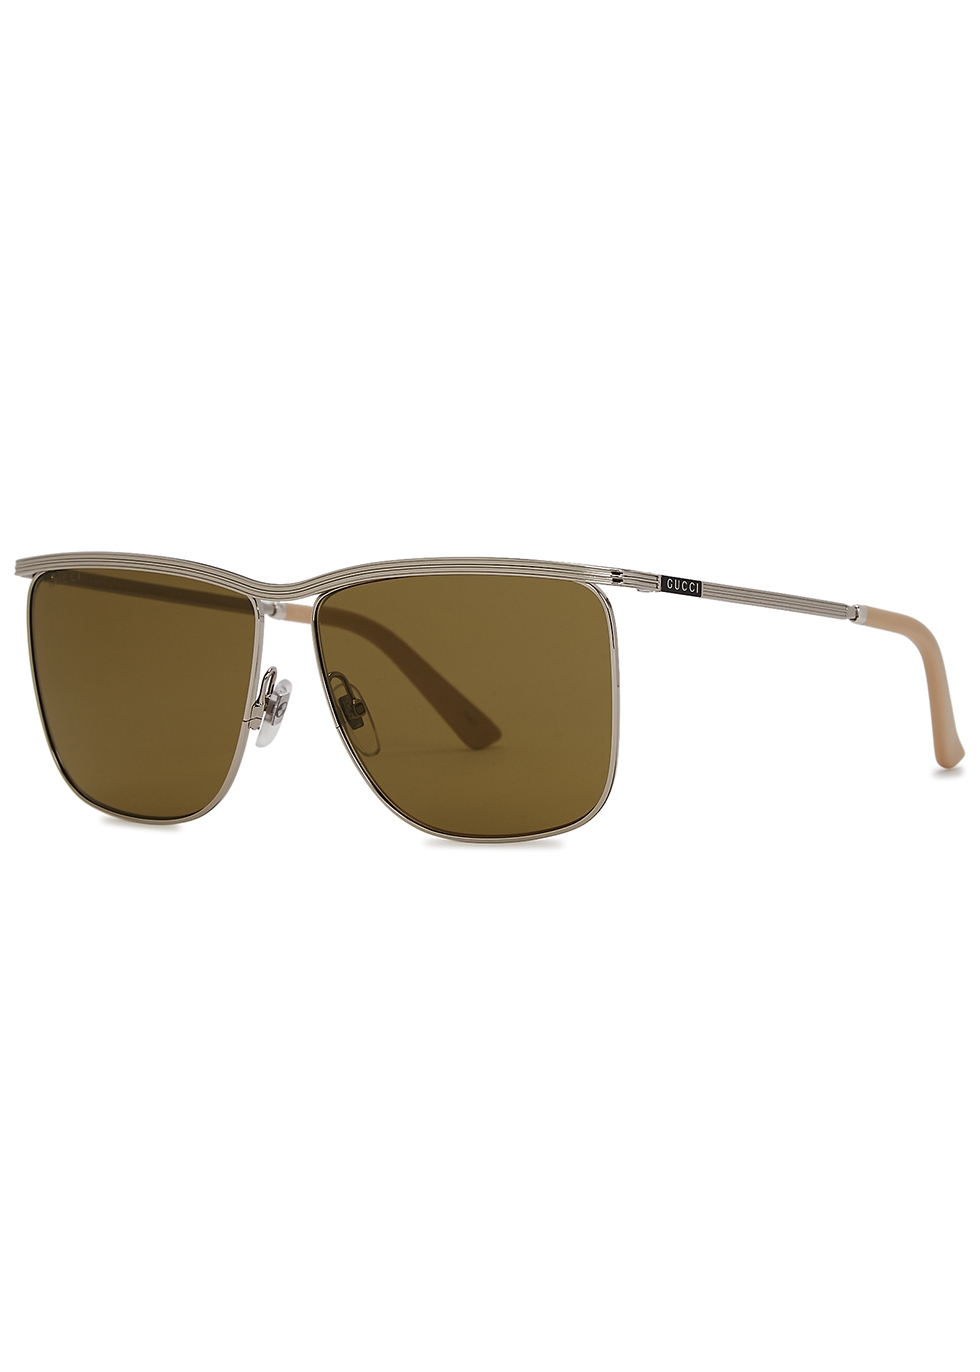 gucci silver tone aviator sunglasses